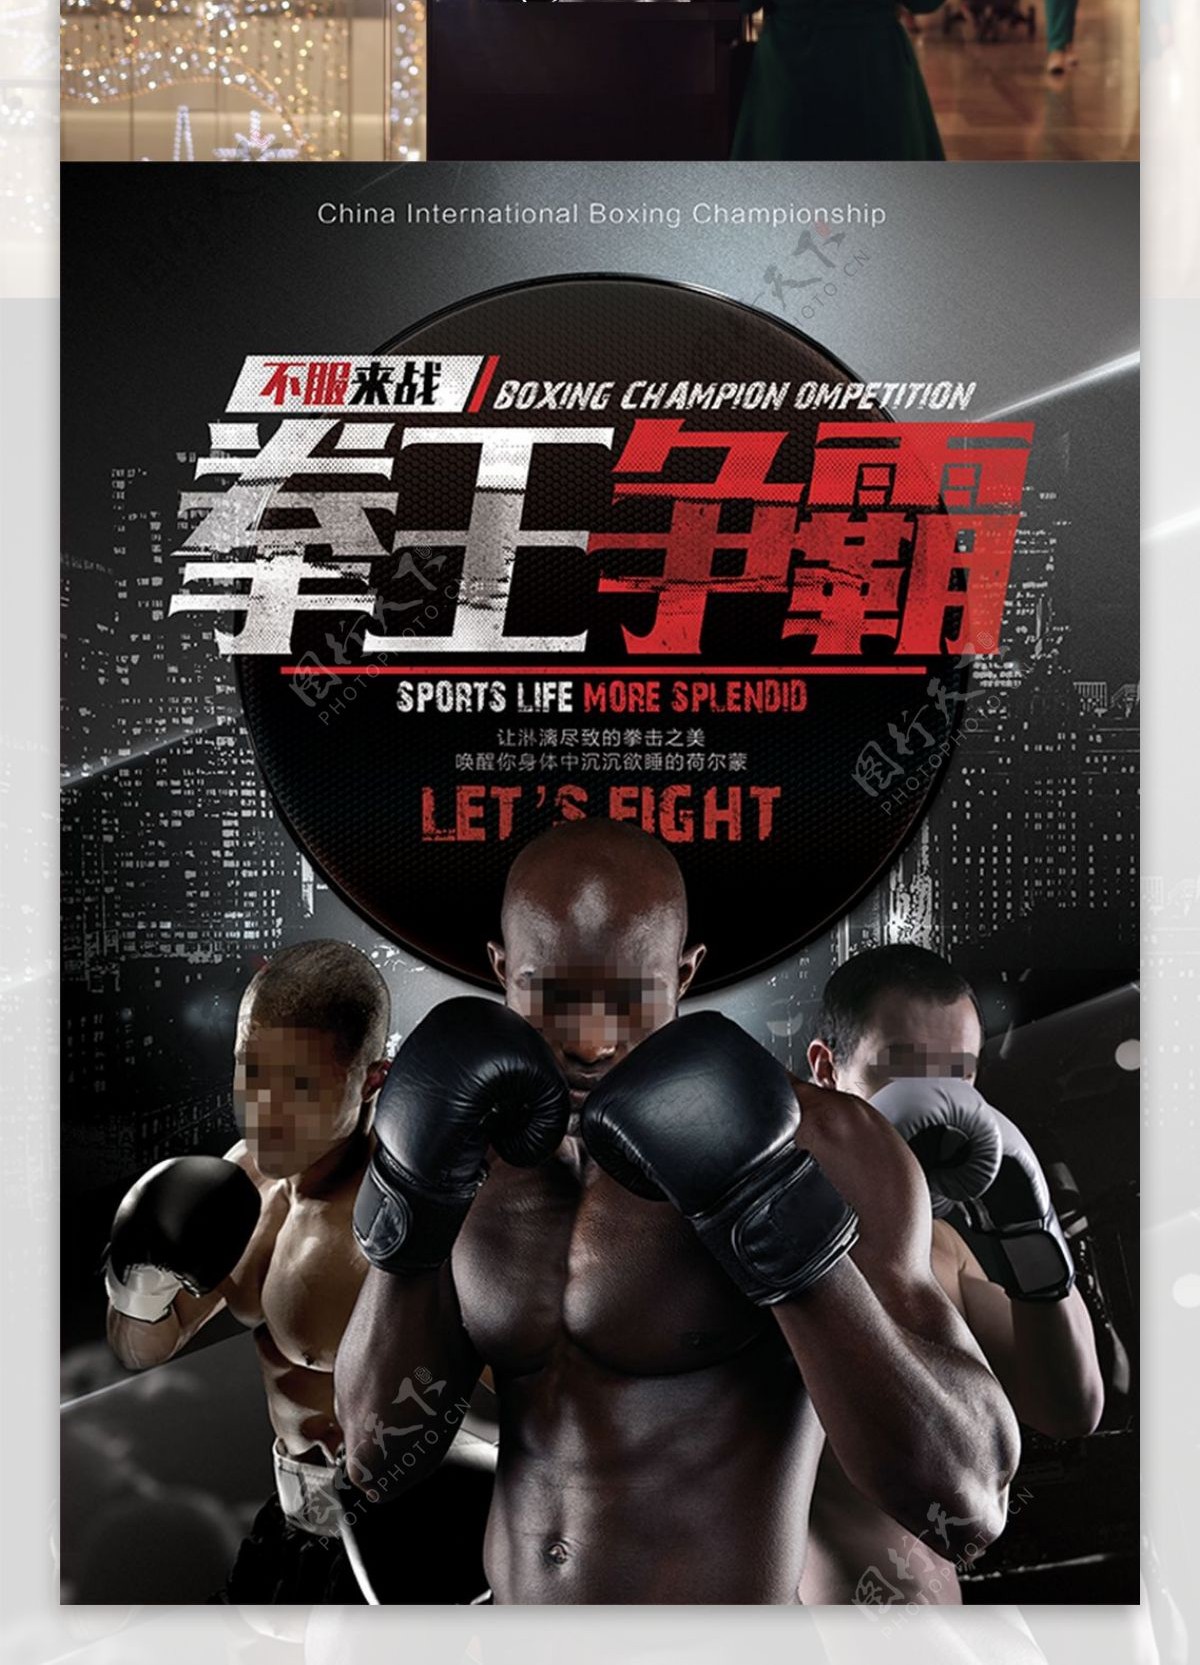 拳王争霸赛体育竞技宣传海报